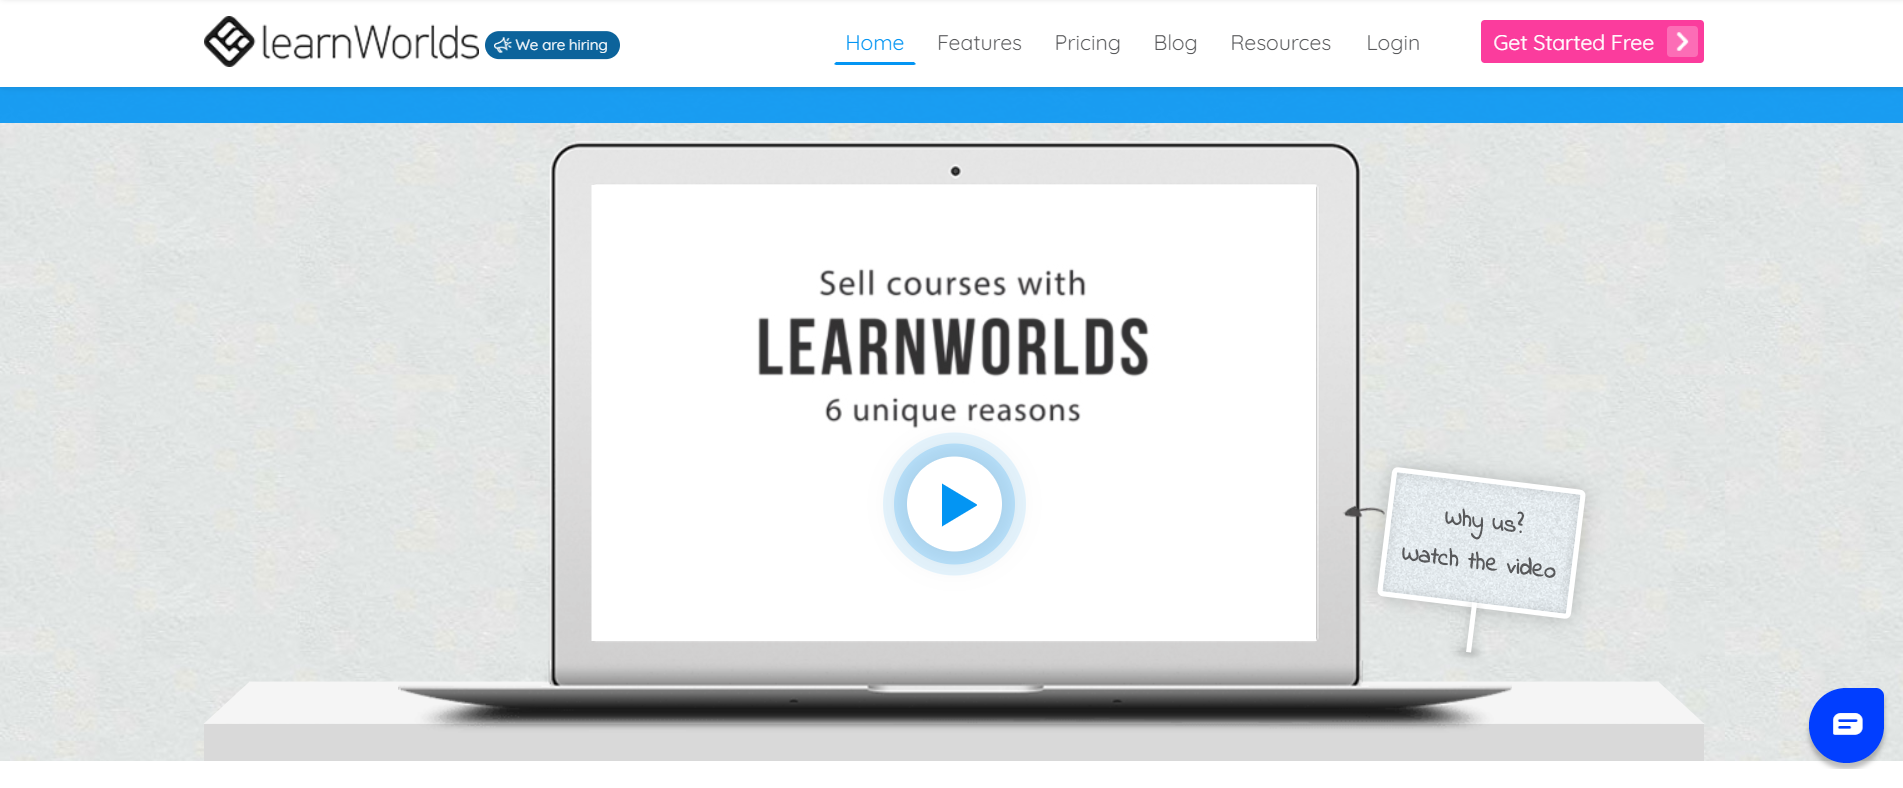 LearnWorld Overview: LearnWorlds vs Podia 